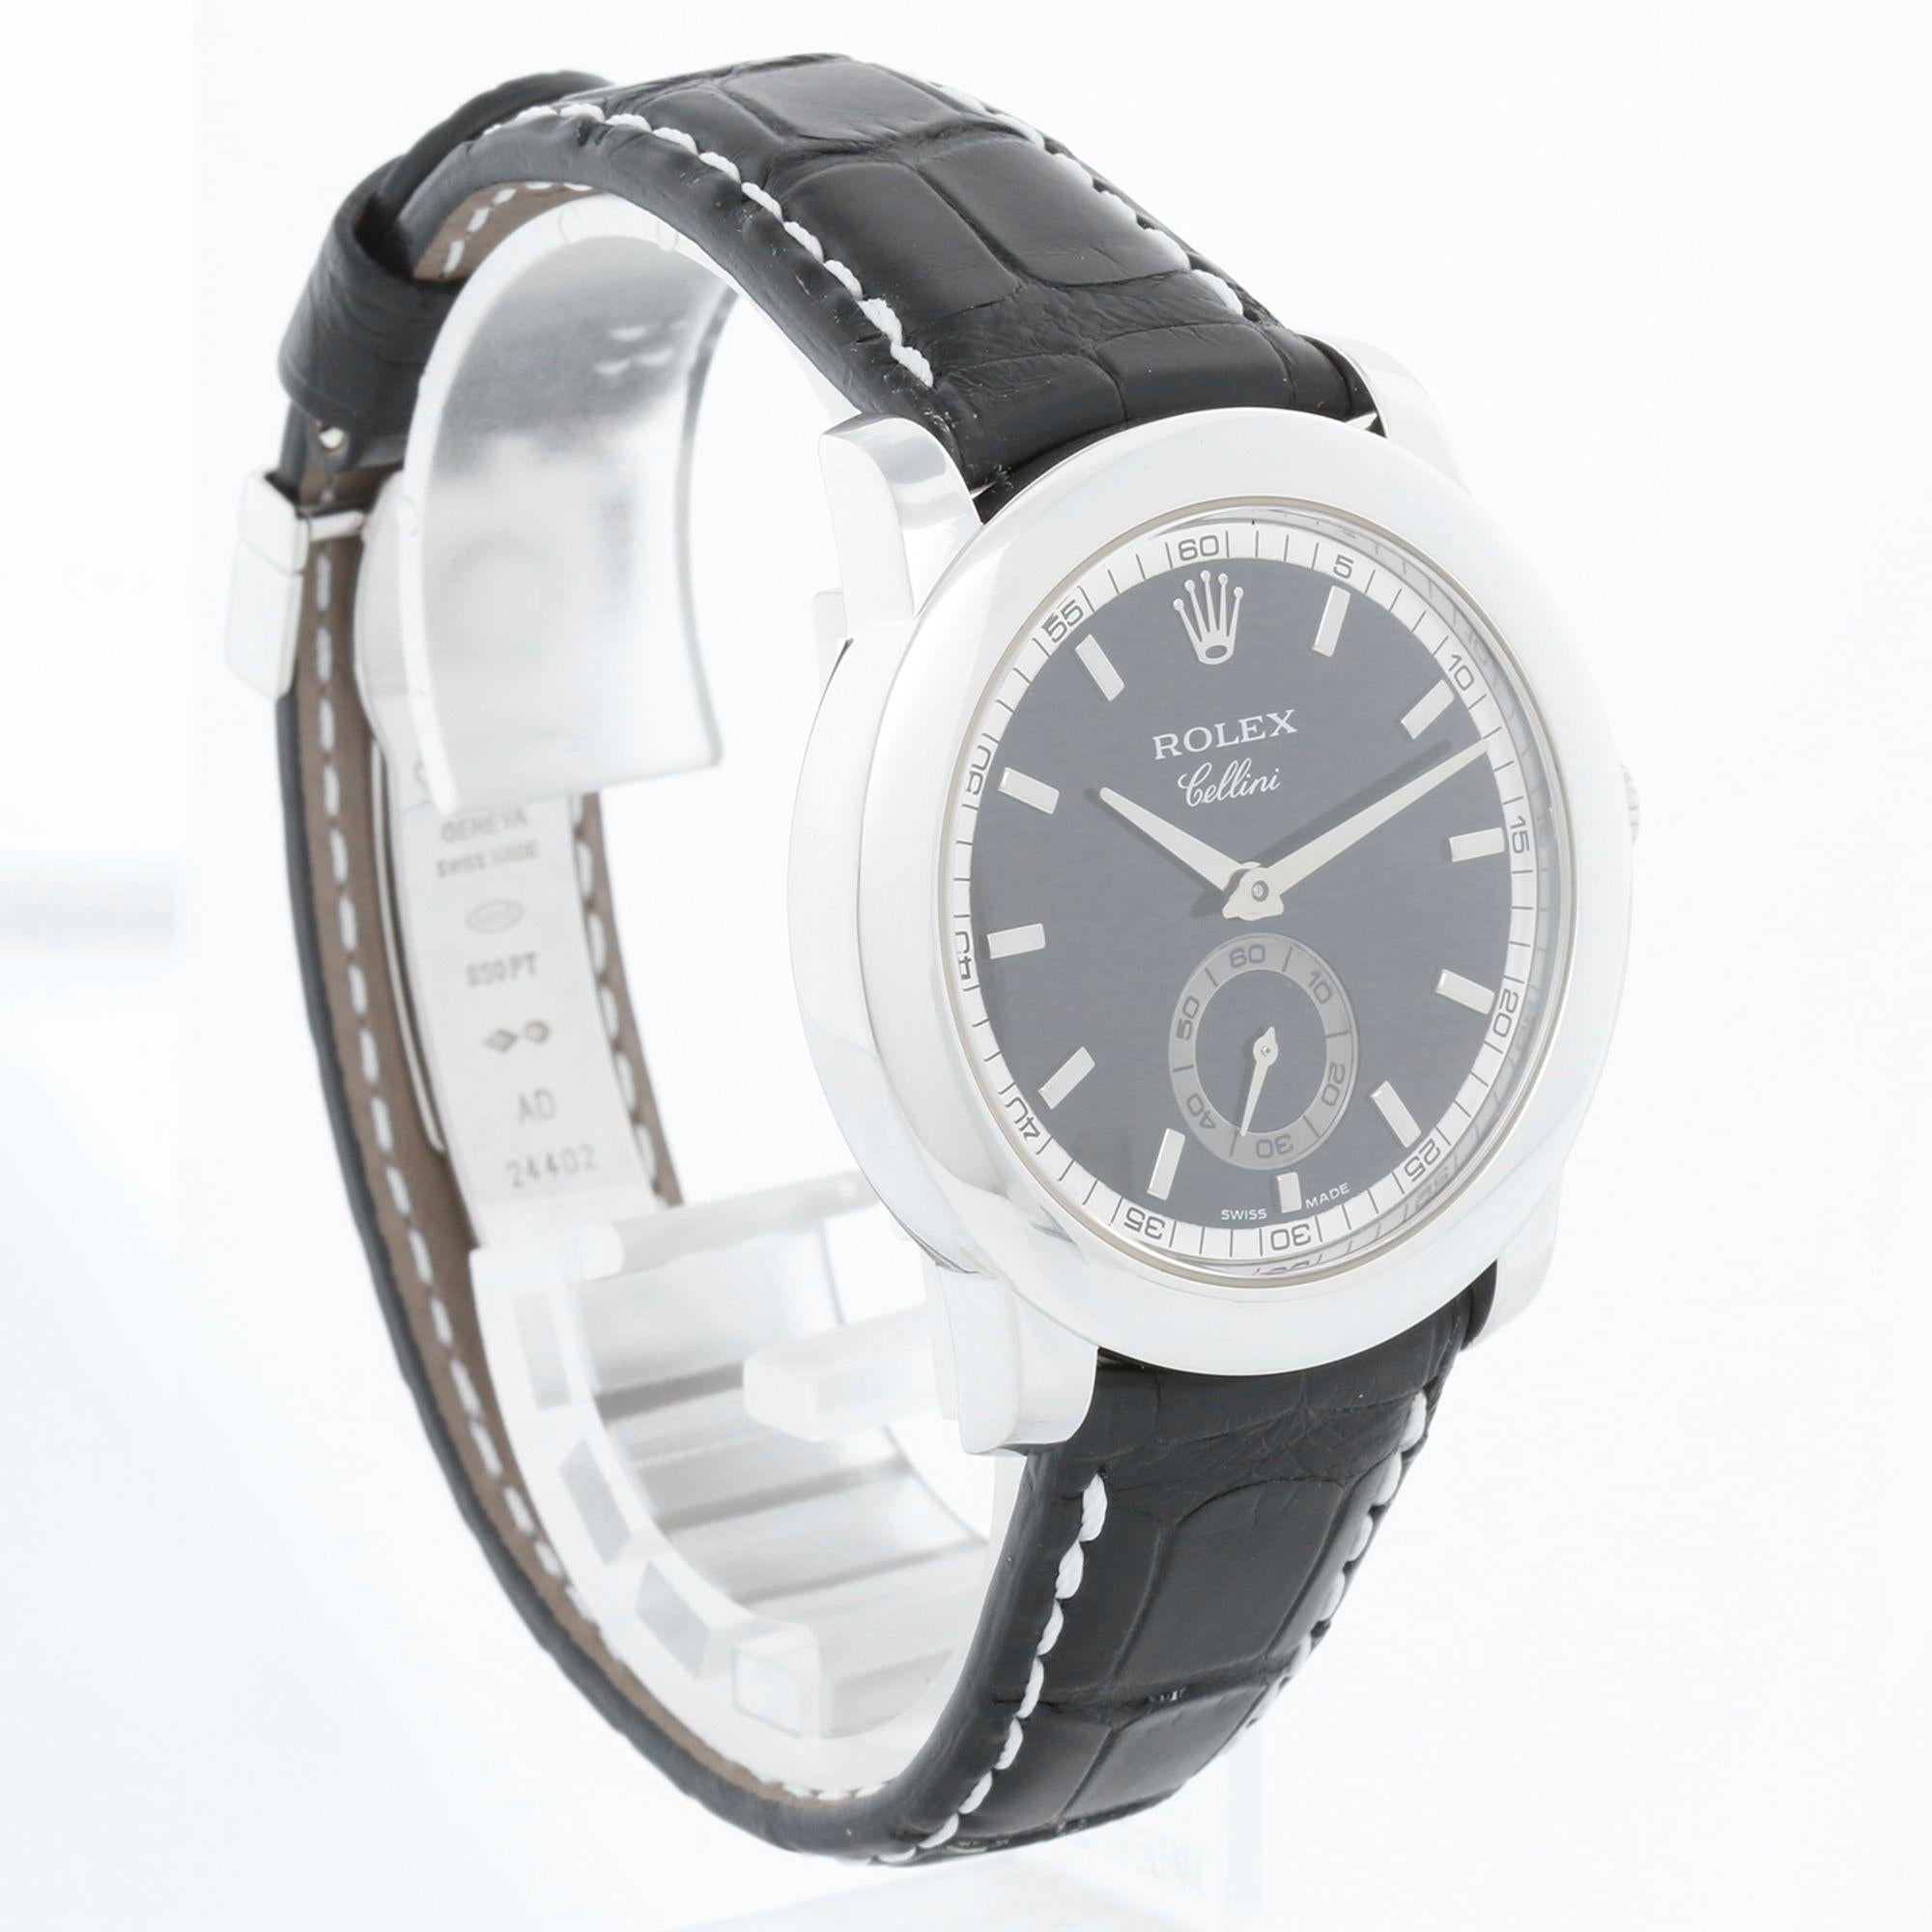 Rolex Cellini Cellinium Men's Platinum Watch with Dial 5241/6 1